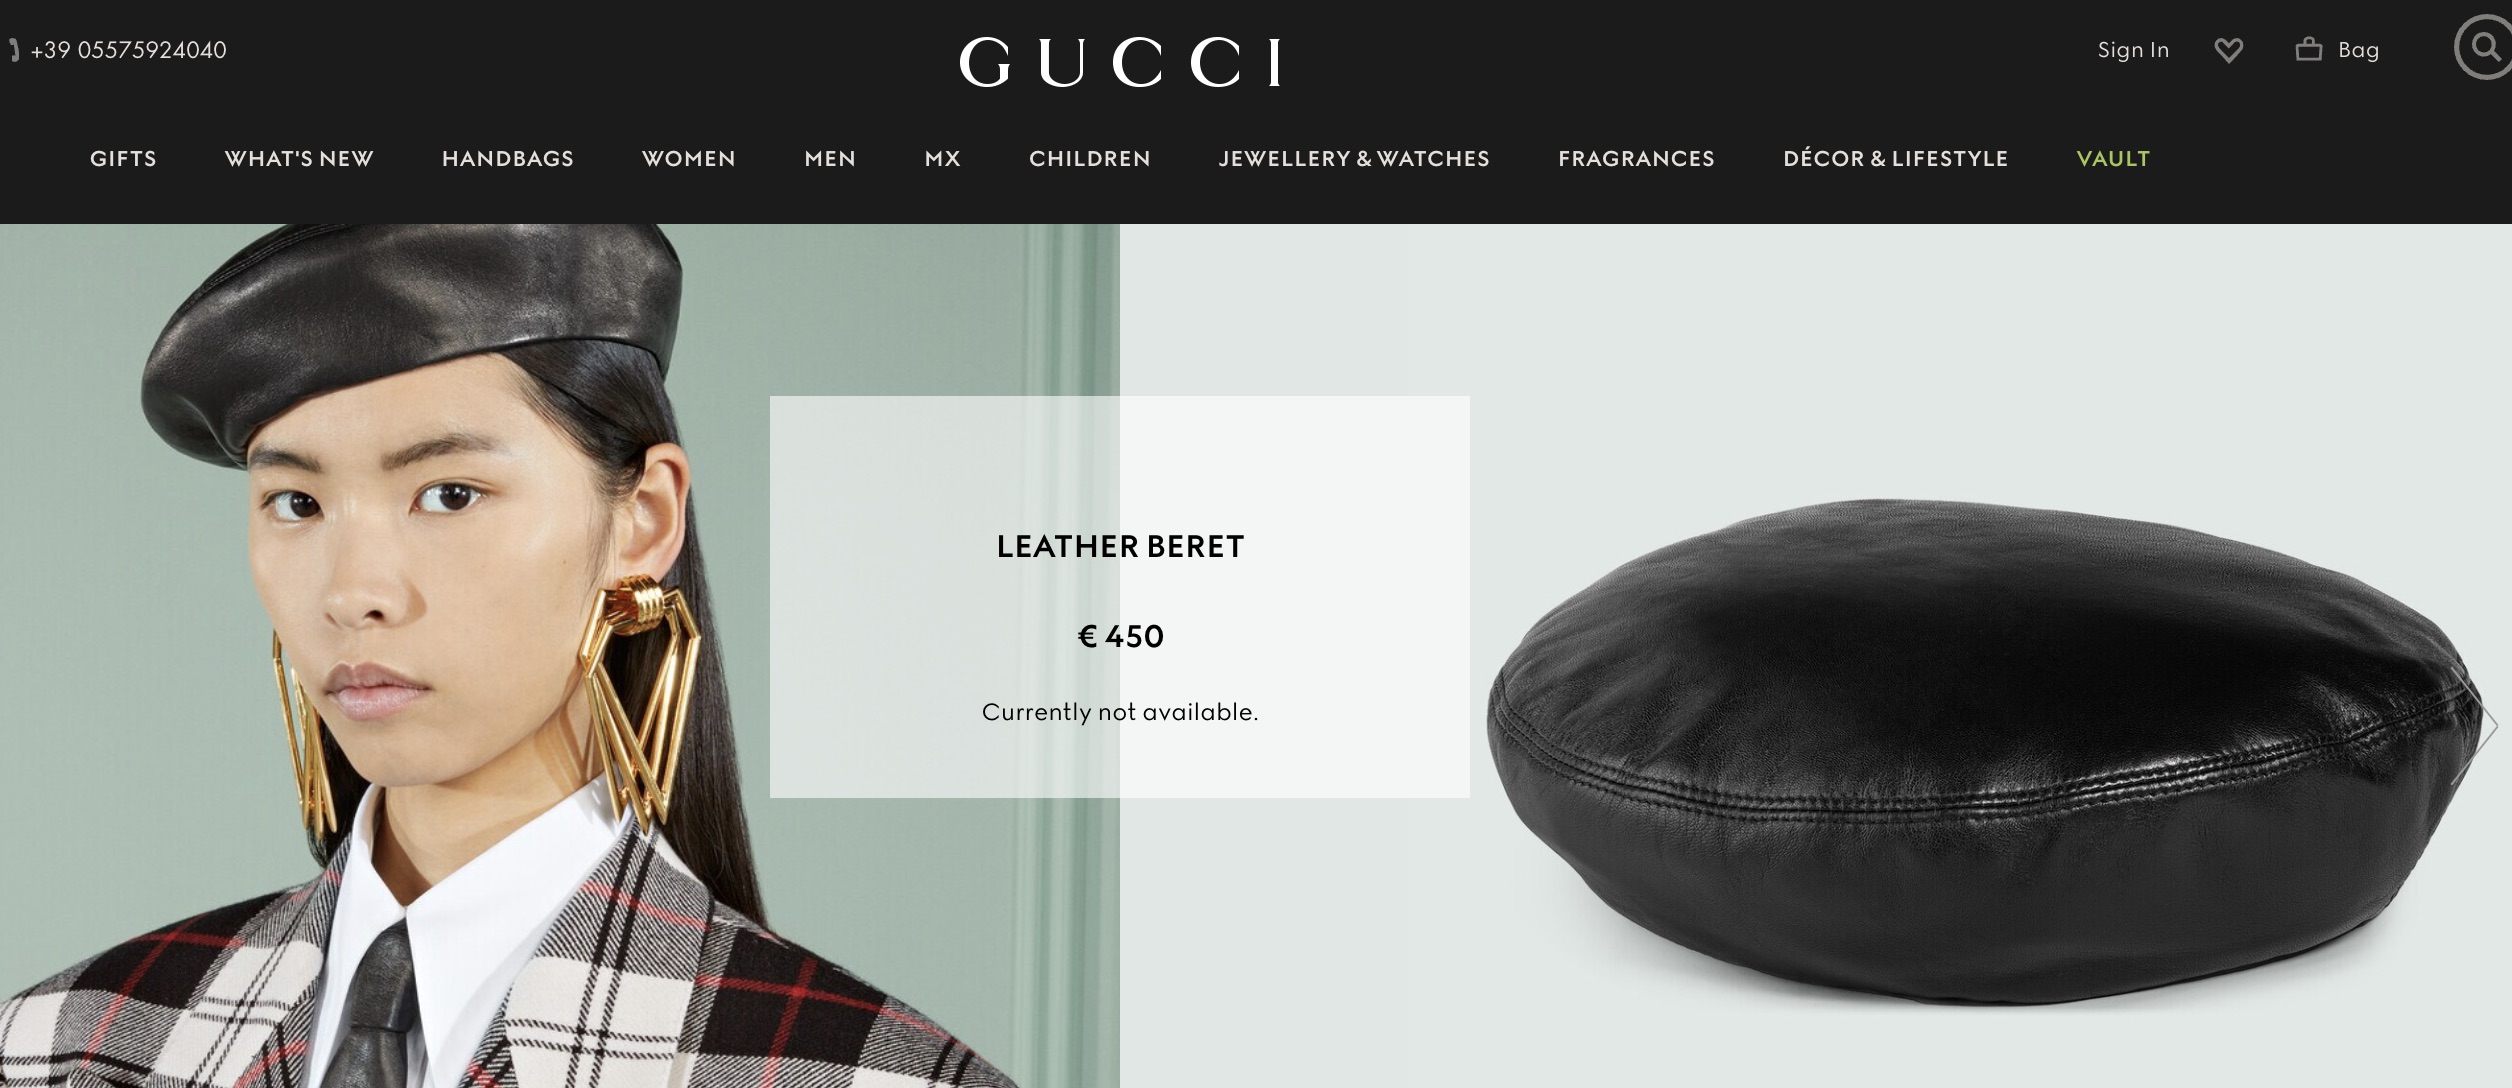 Кожаный берет Gucci. Официальная страница сайта бренда.